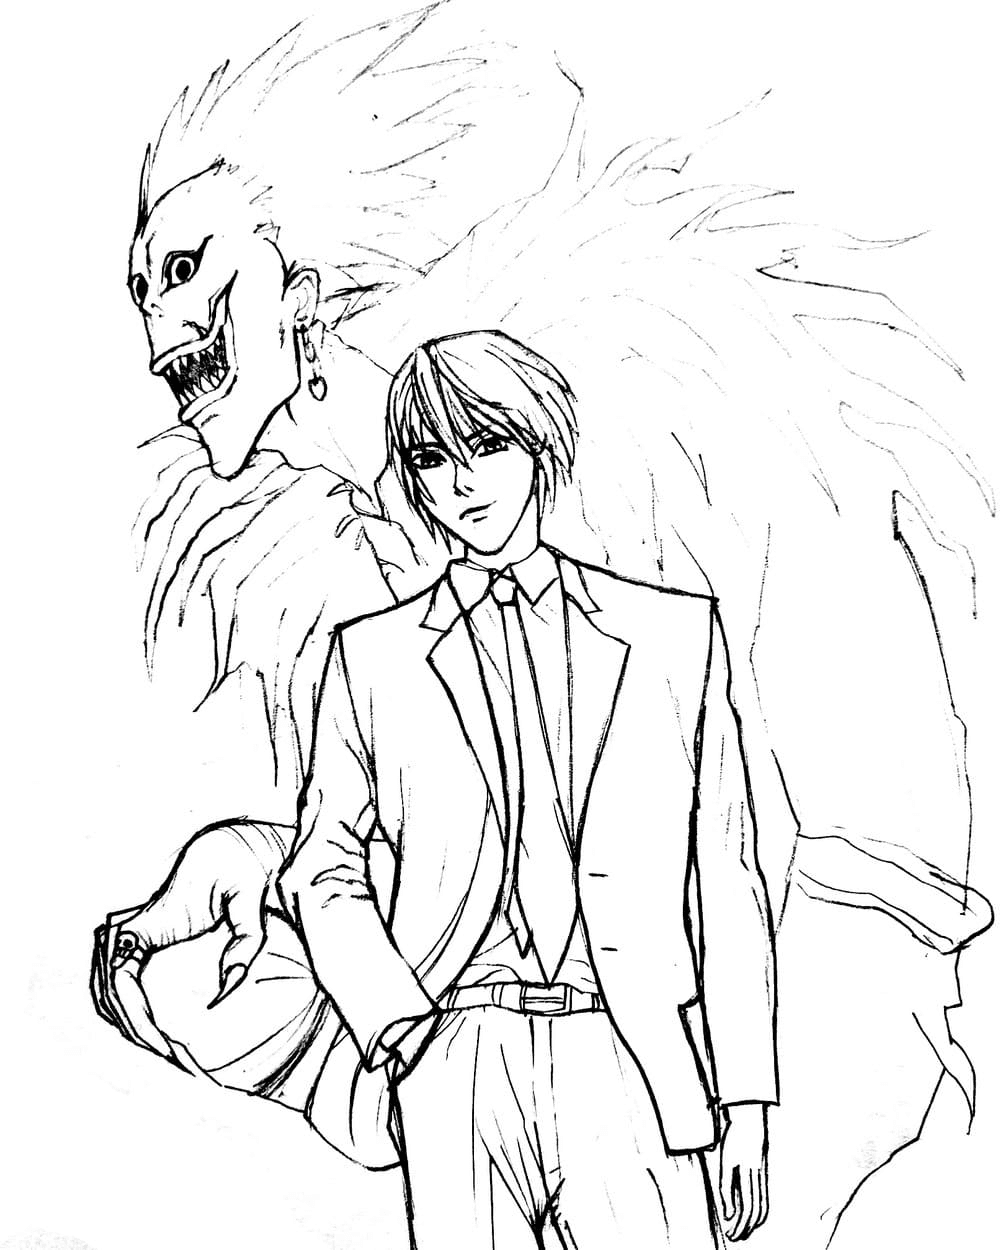 Ryuk und Yagami aus Death Note